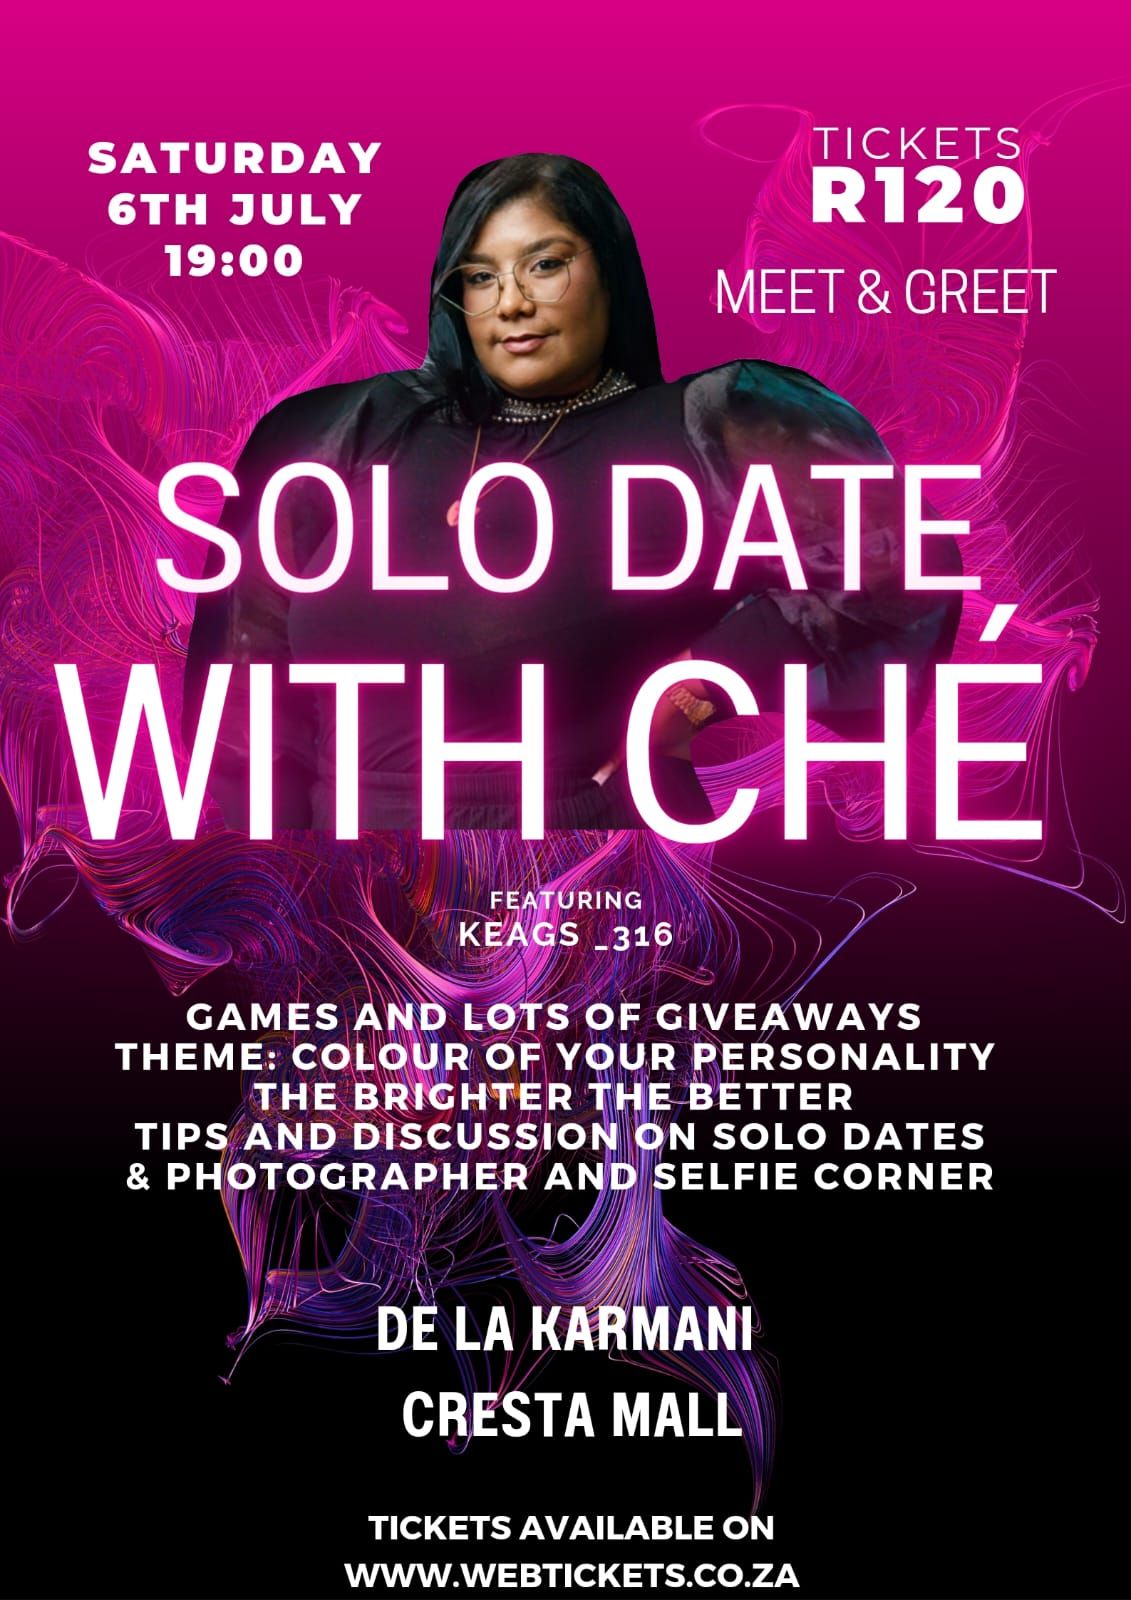 Join us at De La Karmani in Cresta mall